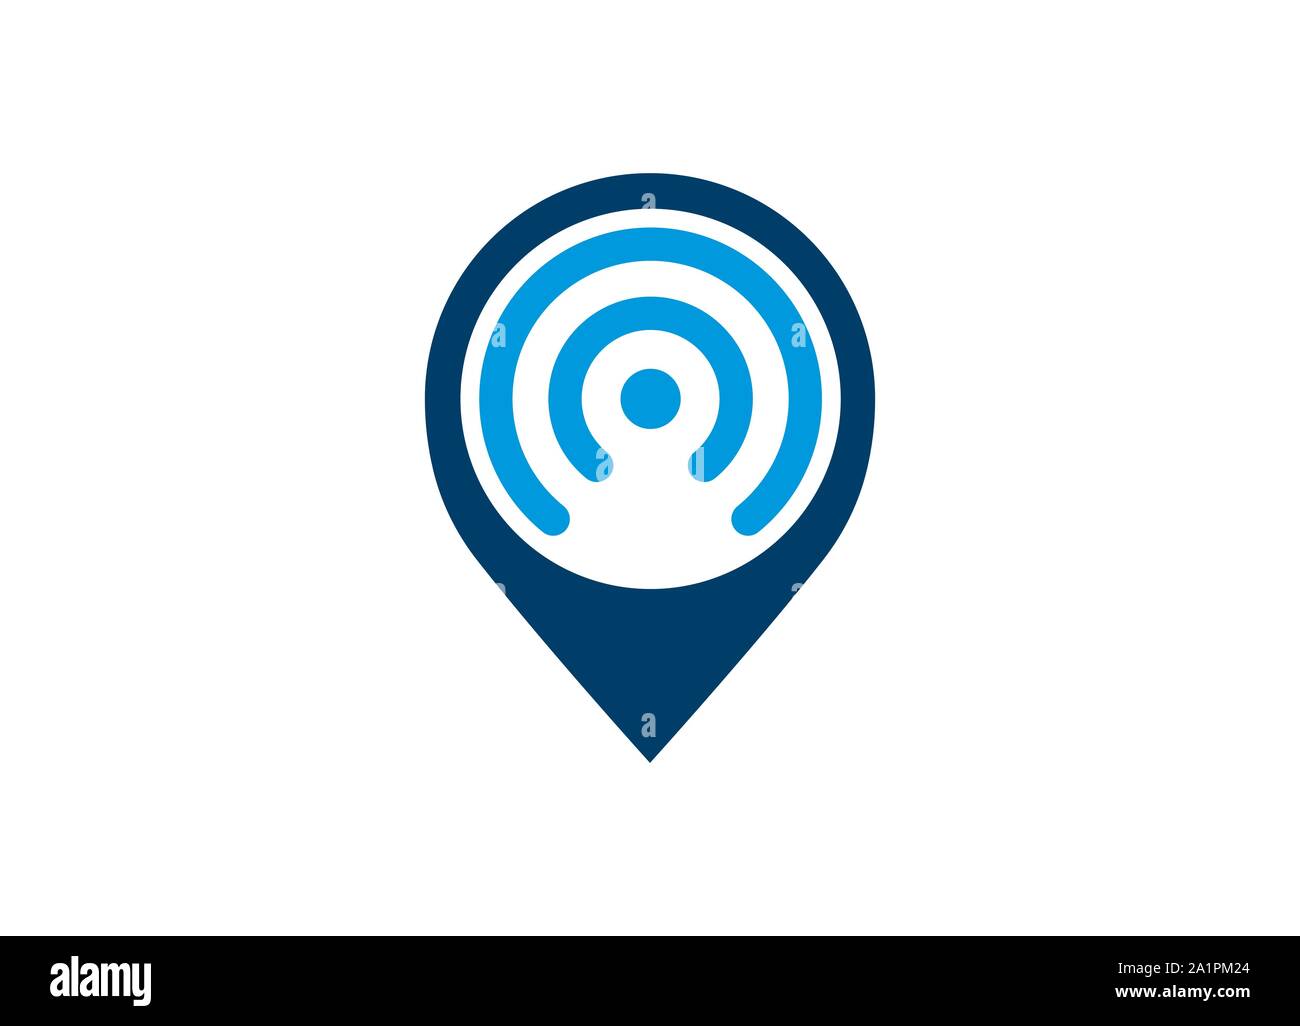 Wi-fi POSIZIONE icone, connessione WiFi icona del segnale con un puntatore mappa o la posizione del cerchio. Vettore di puntatore mappa e WiFi e la combinazione di logo. Illustrazione Vettoriale